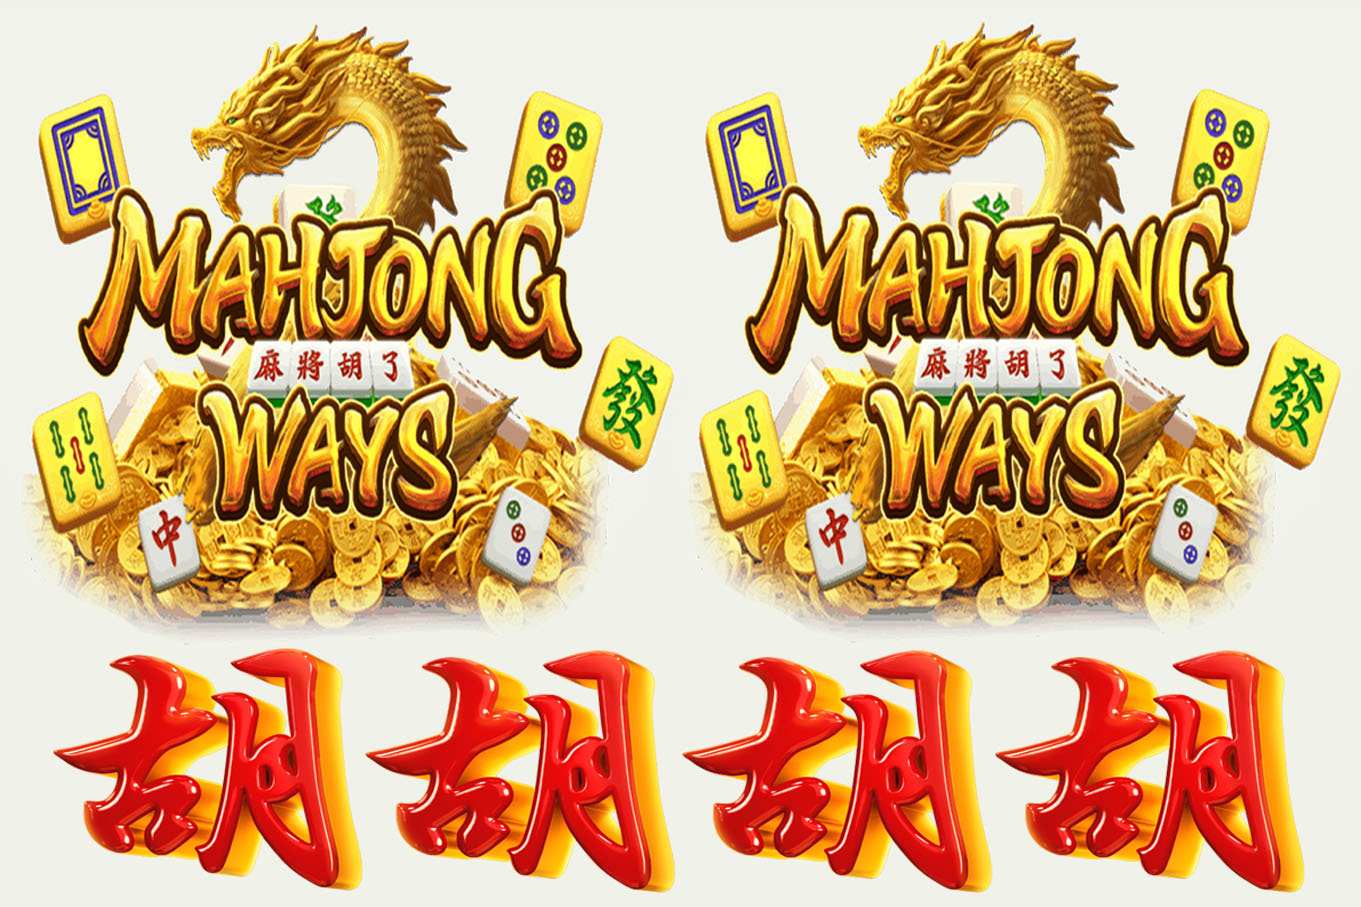 Strategi Memenangkan Permainan Mahjong Ways dan Slot Dana: Meraih Maxwin dengan Bijaksana post thumbnail image